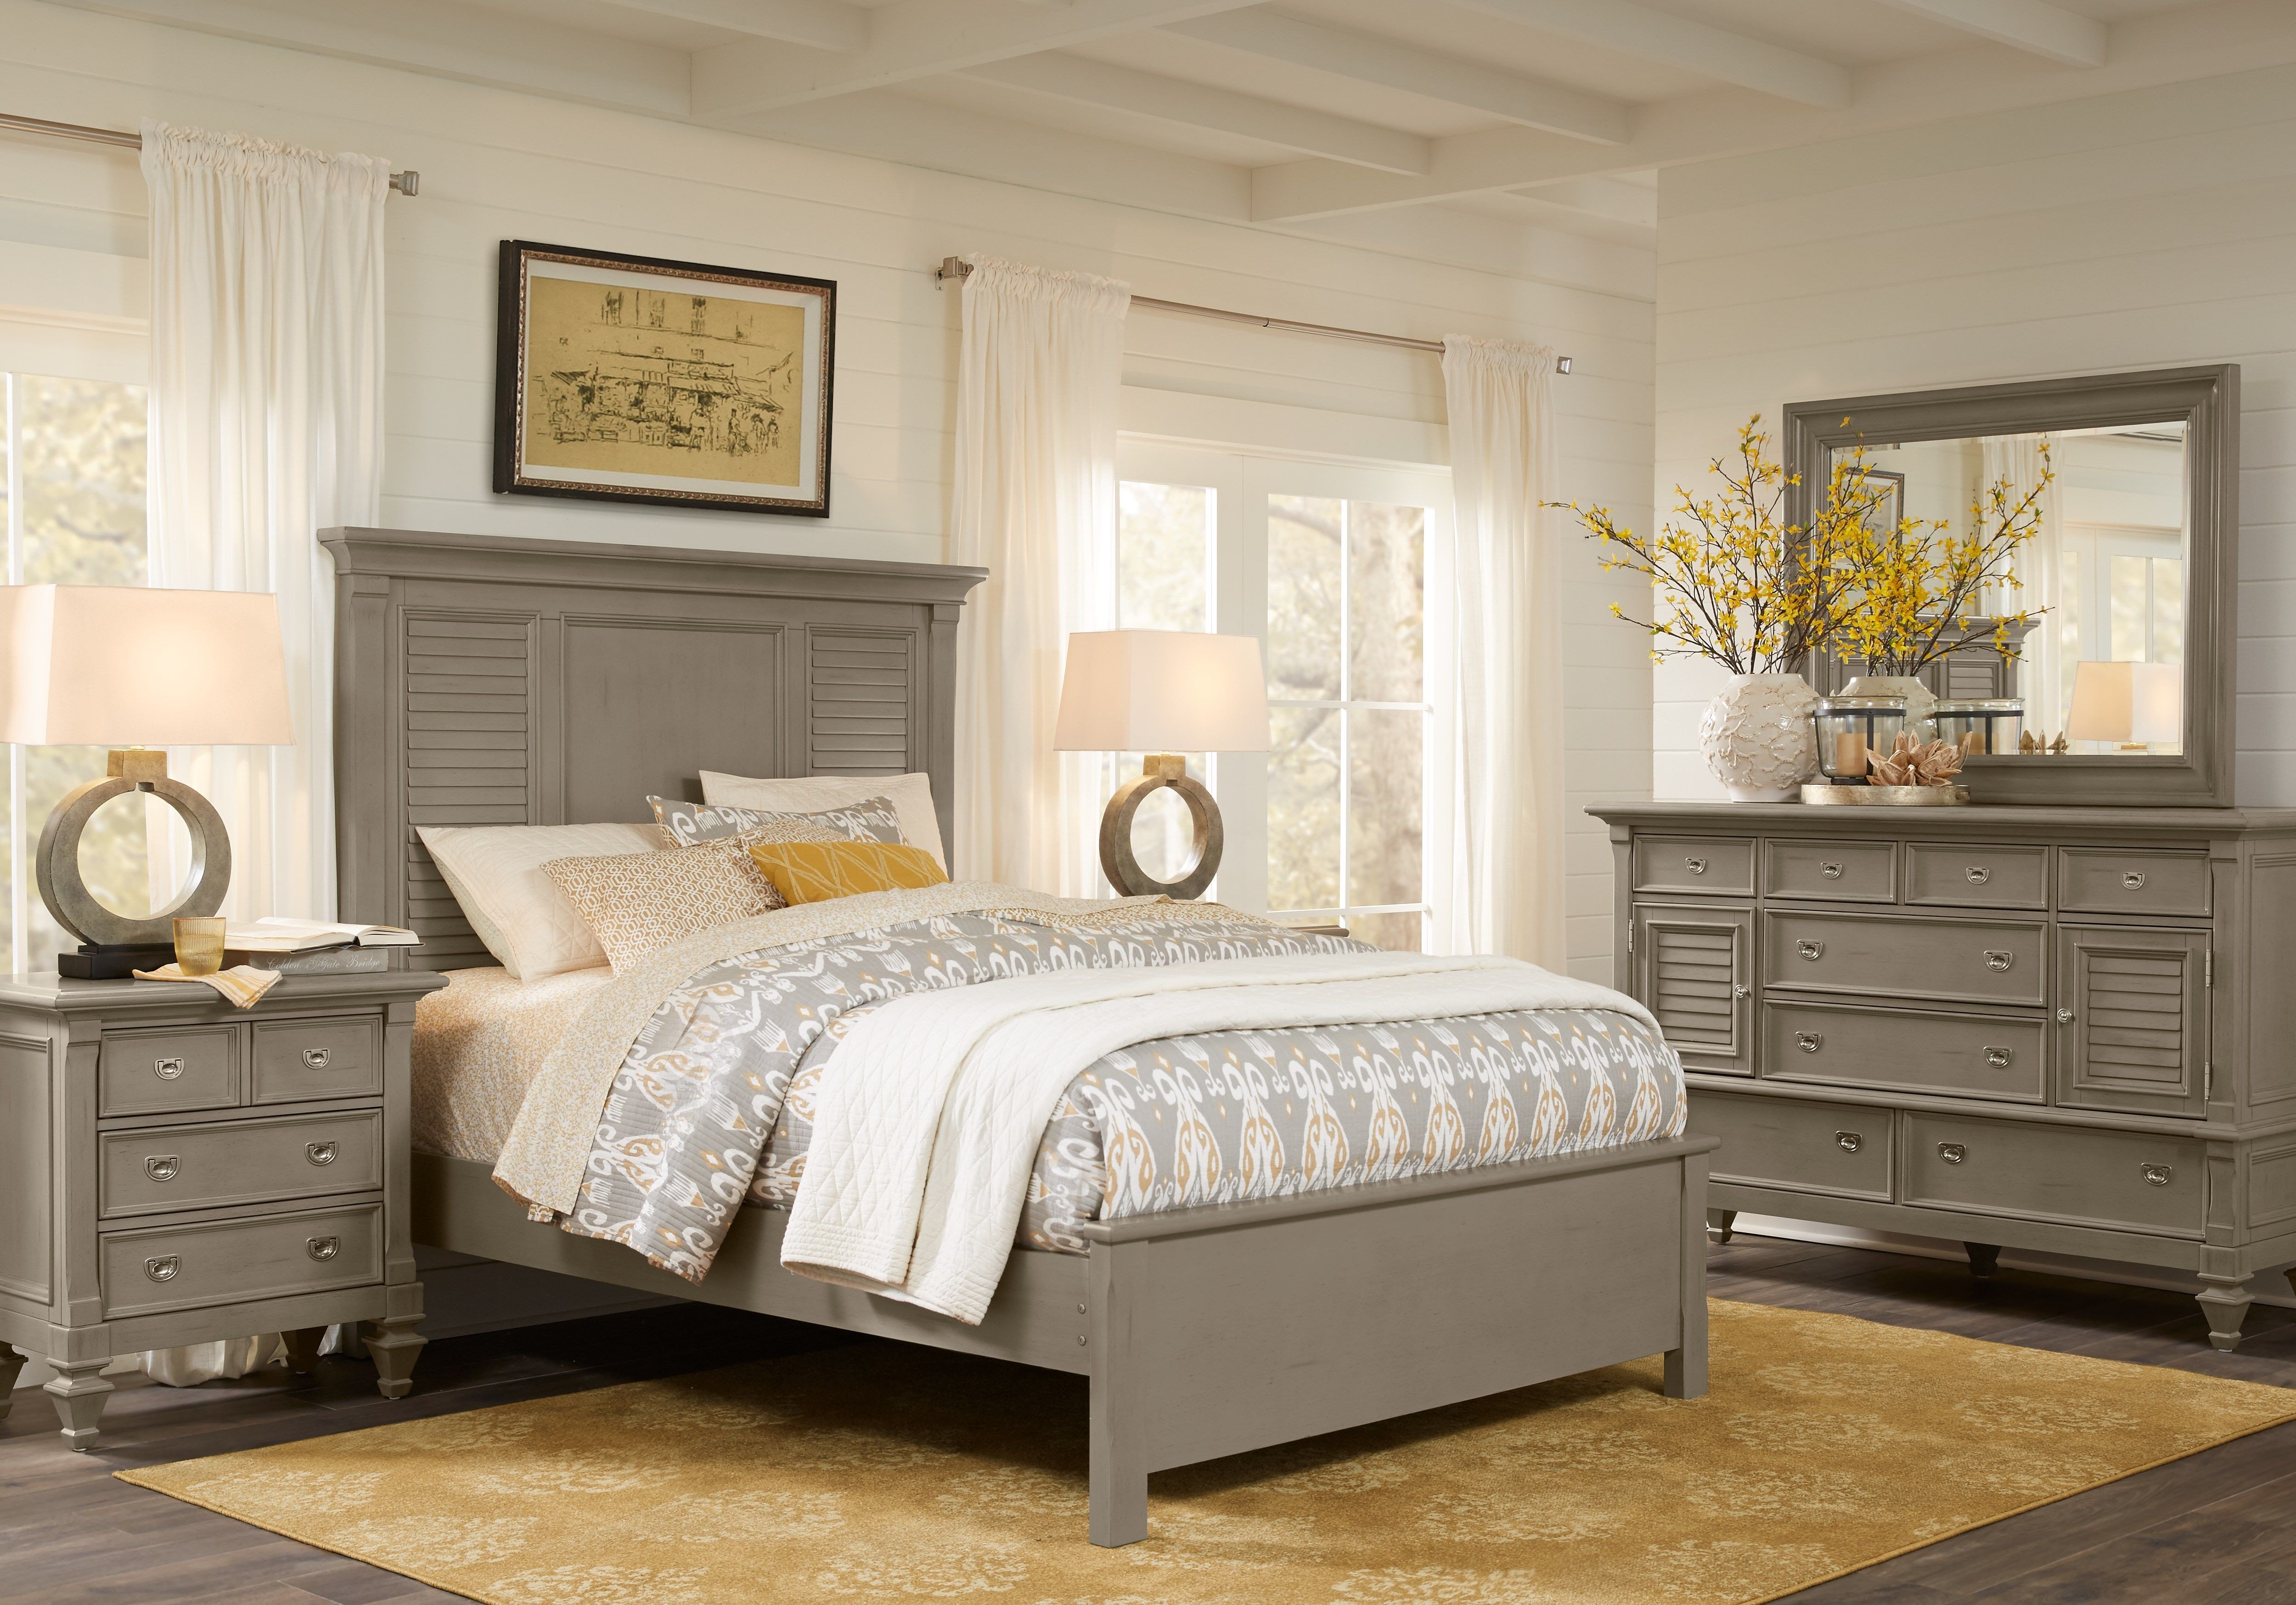 Full Size Bedroom Suite Inspirational Belmar Gray 5 Pc King Bedroom Decor In 2019